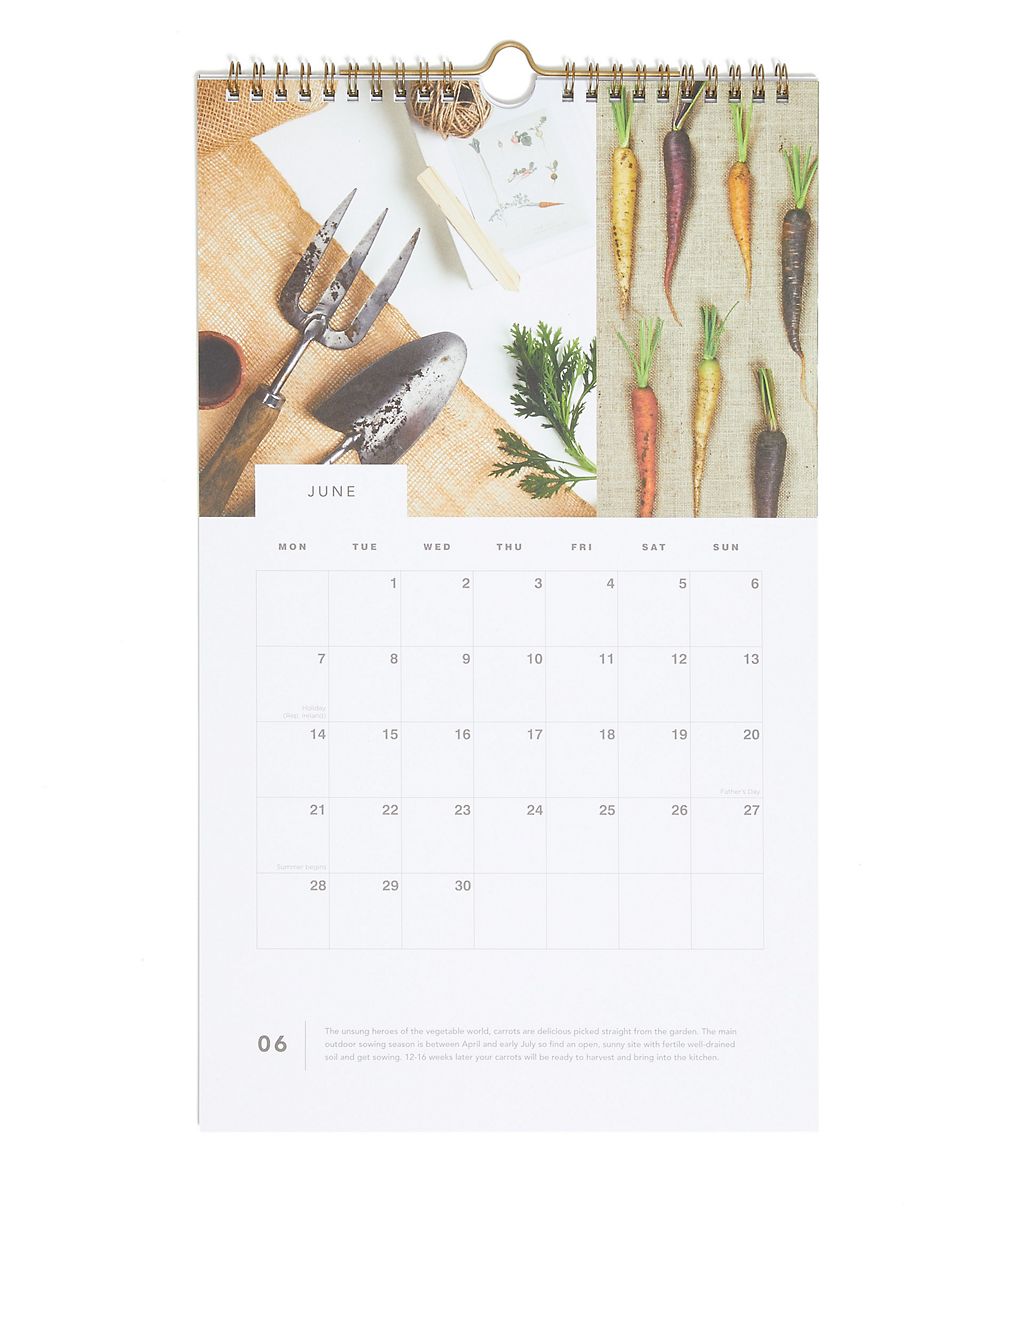 RHS 2021 Gardening Tips Calendar - Medium 1 of 3